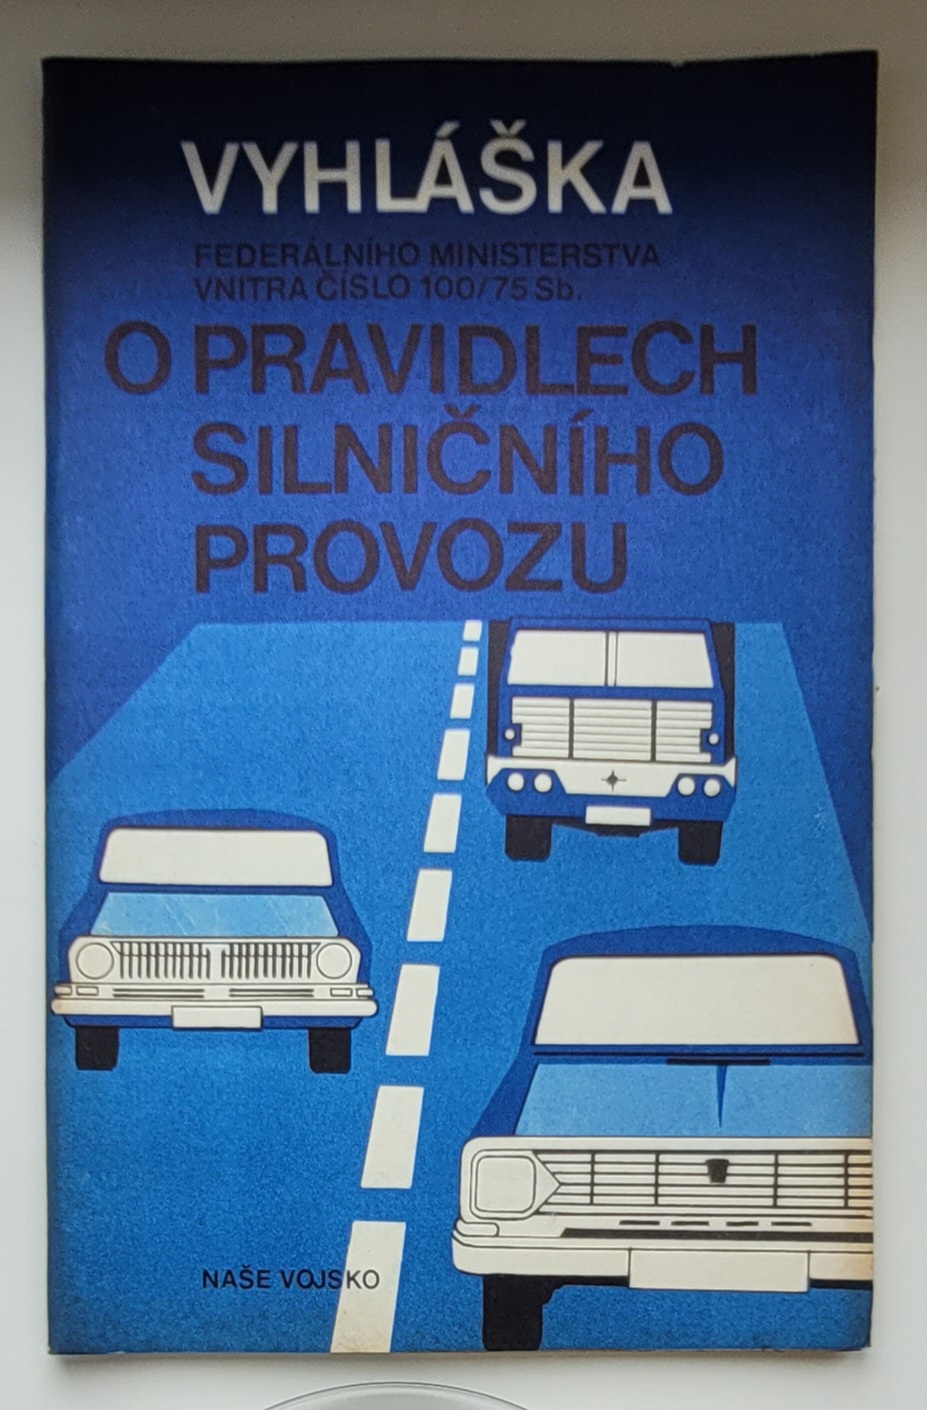 Vyhláška FMV č. 100/75 Sb. o pravidlech silničního provozu - ANTIKVARIÁT